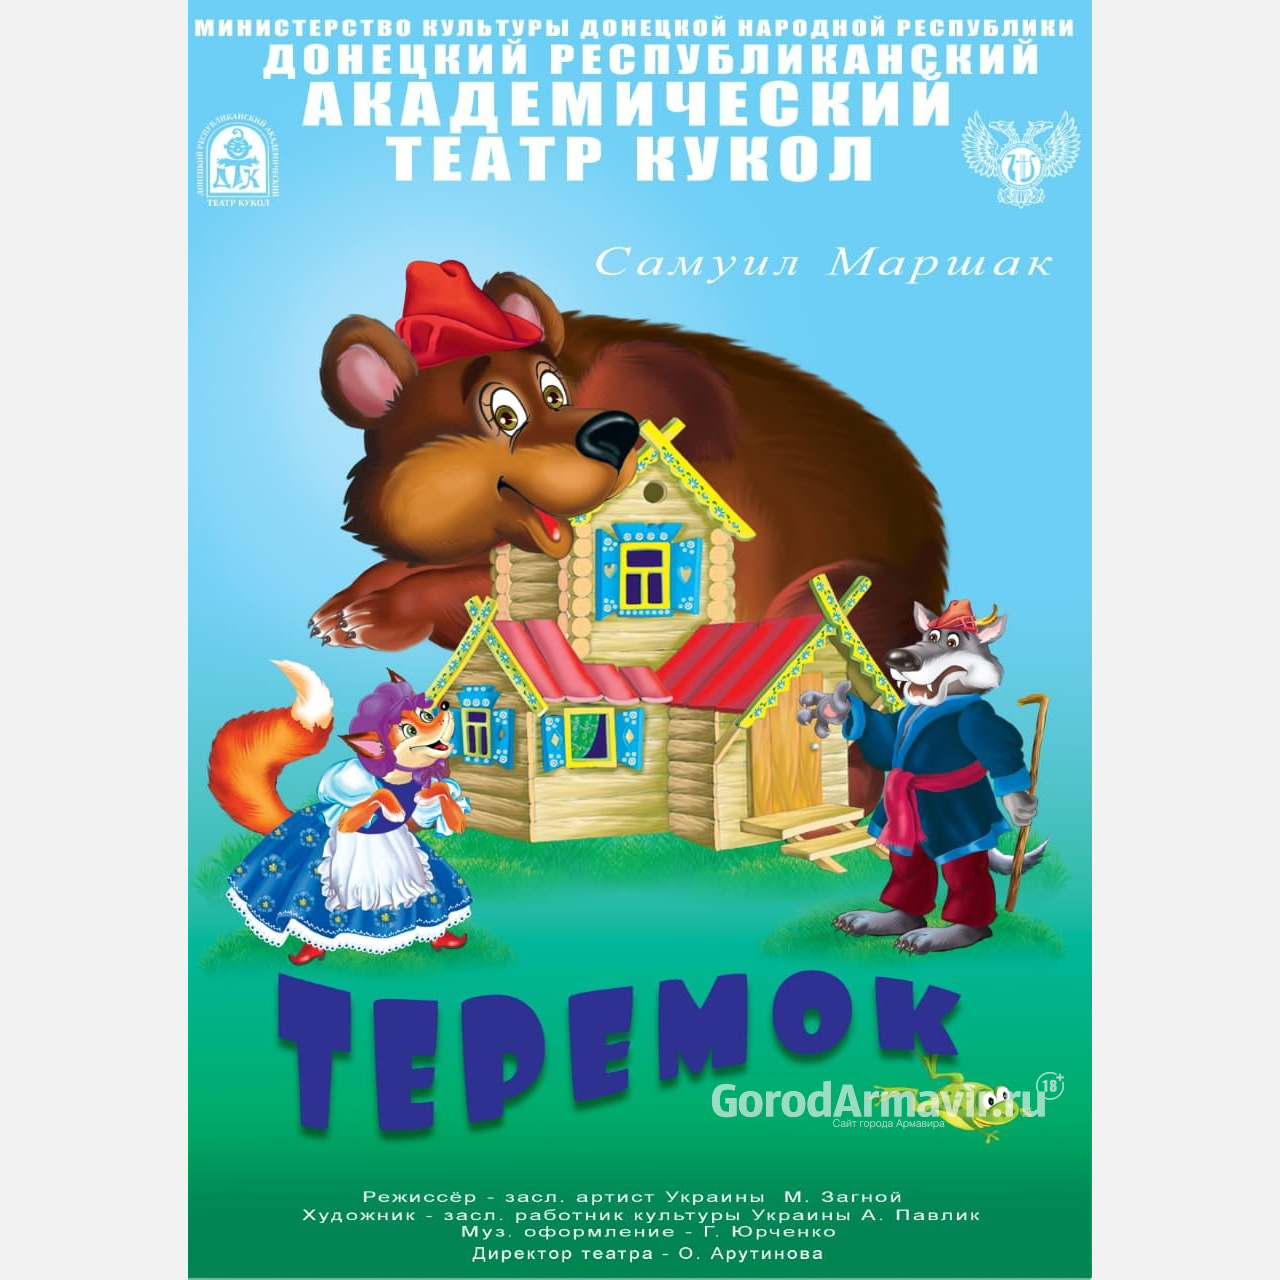 В ГДК Армавира 3 августа пройдет бесплатный показ спектакля Донецкого театра кукол